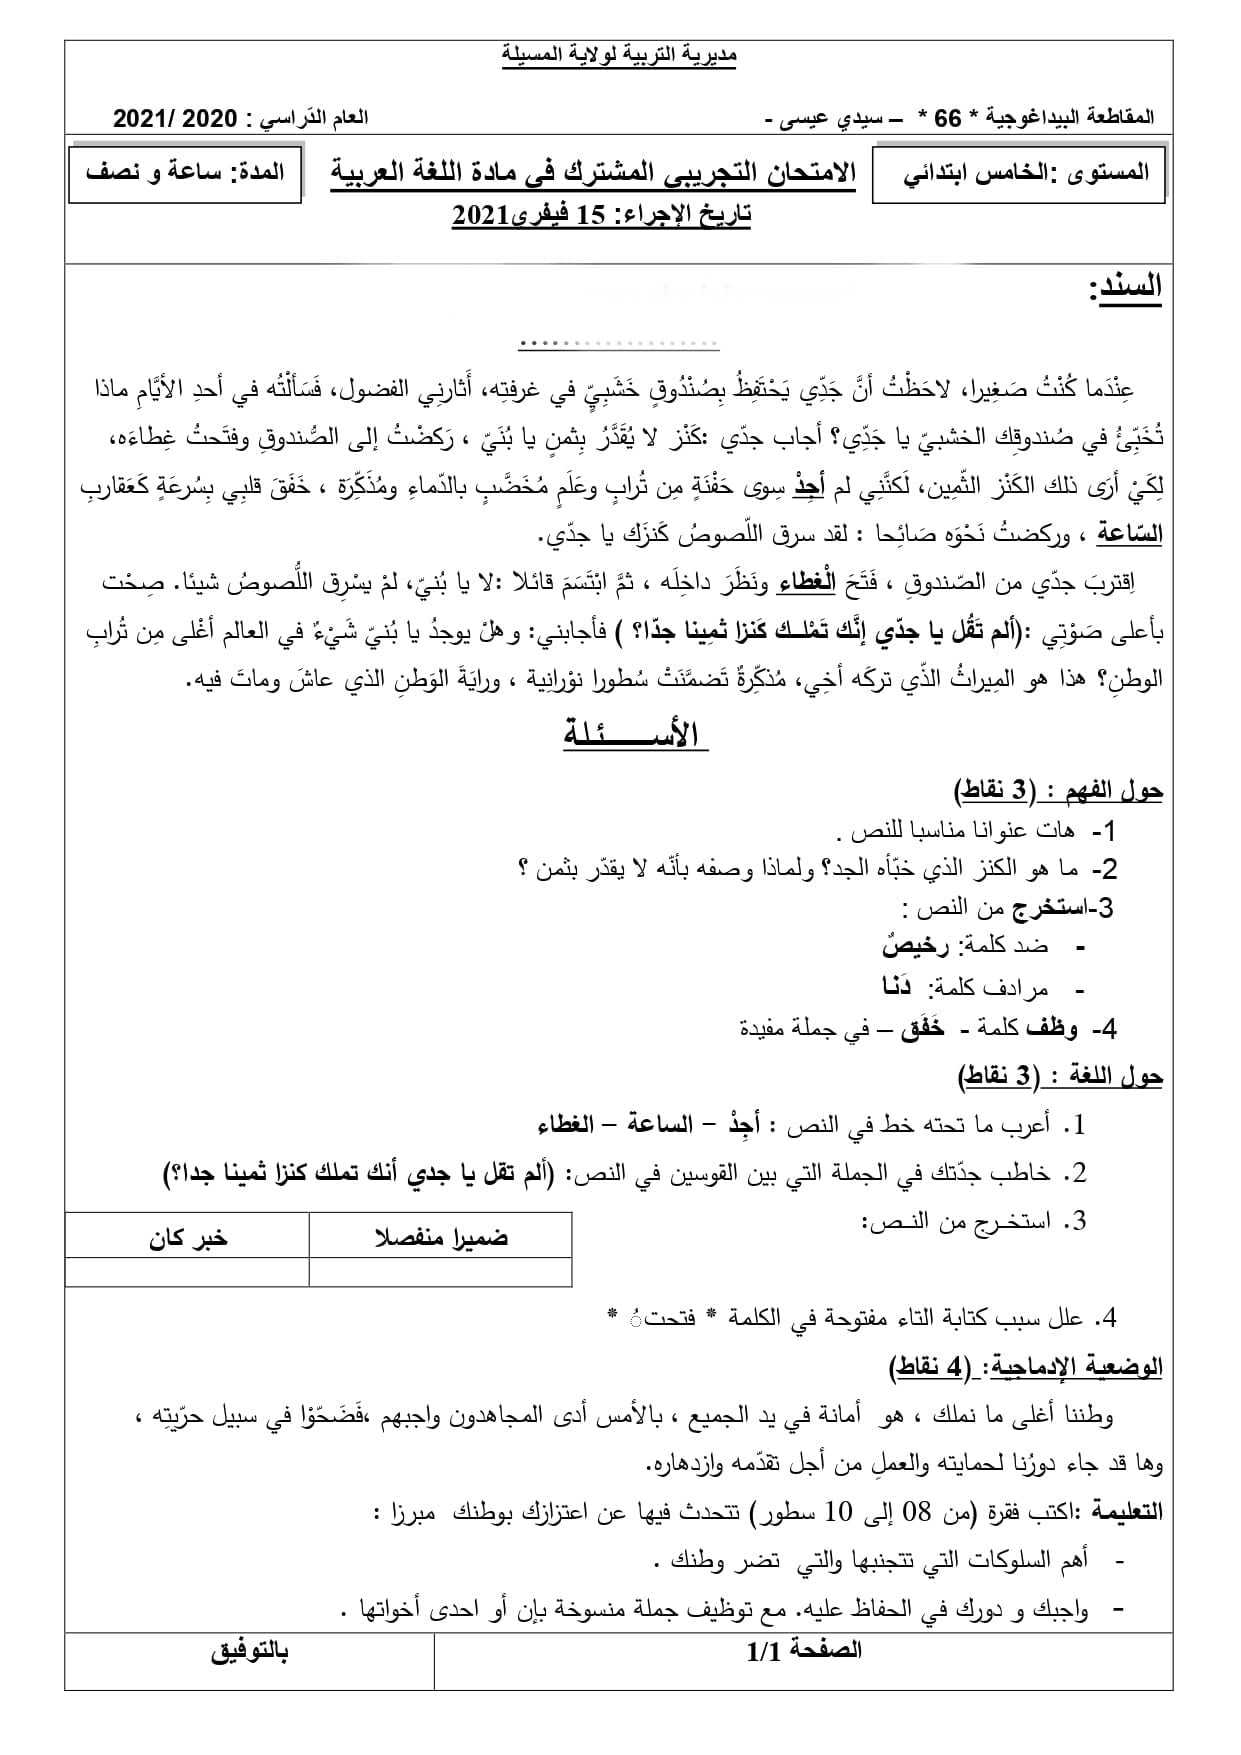 موضوع رقم 1 مقترح مع الحل في مادة اللغة العربية لامتحان شهادة التعليم الابتدائي 2021